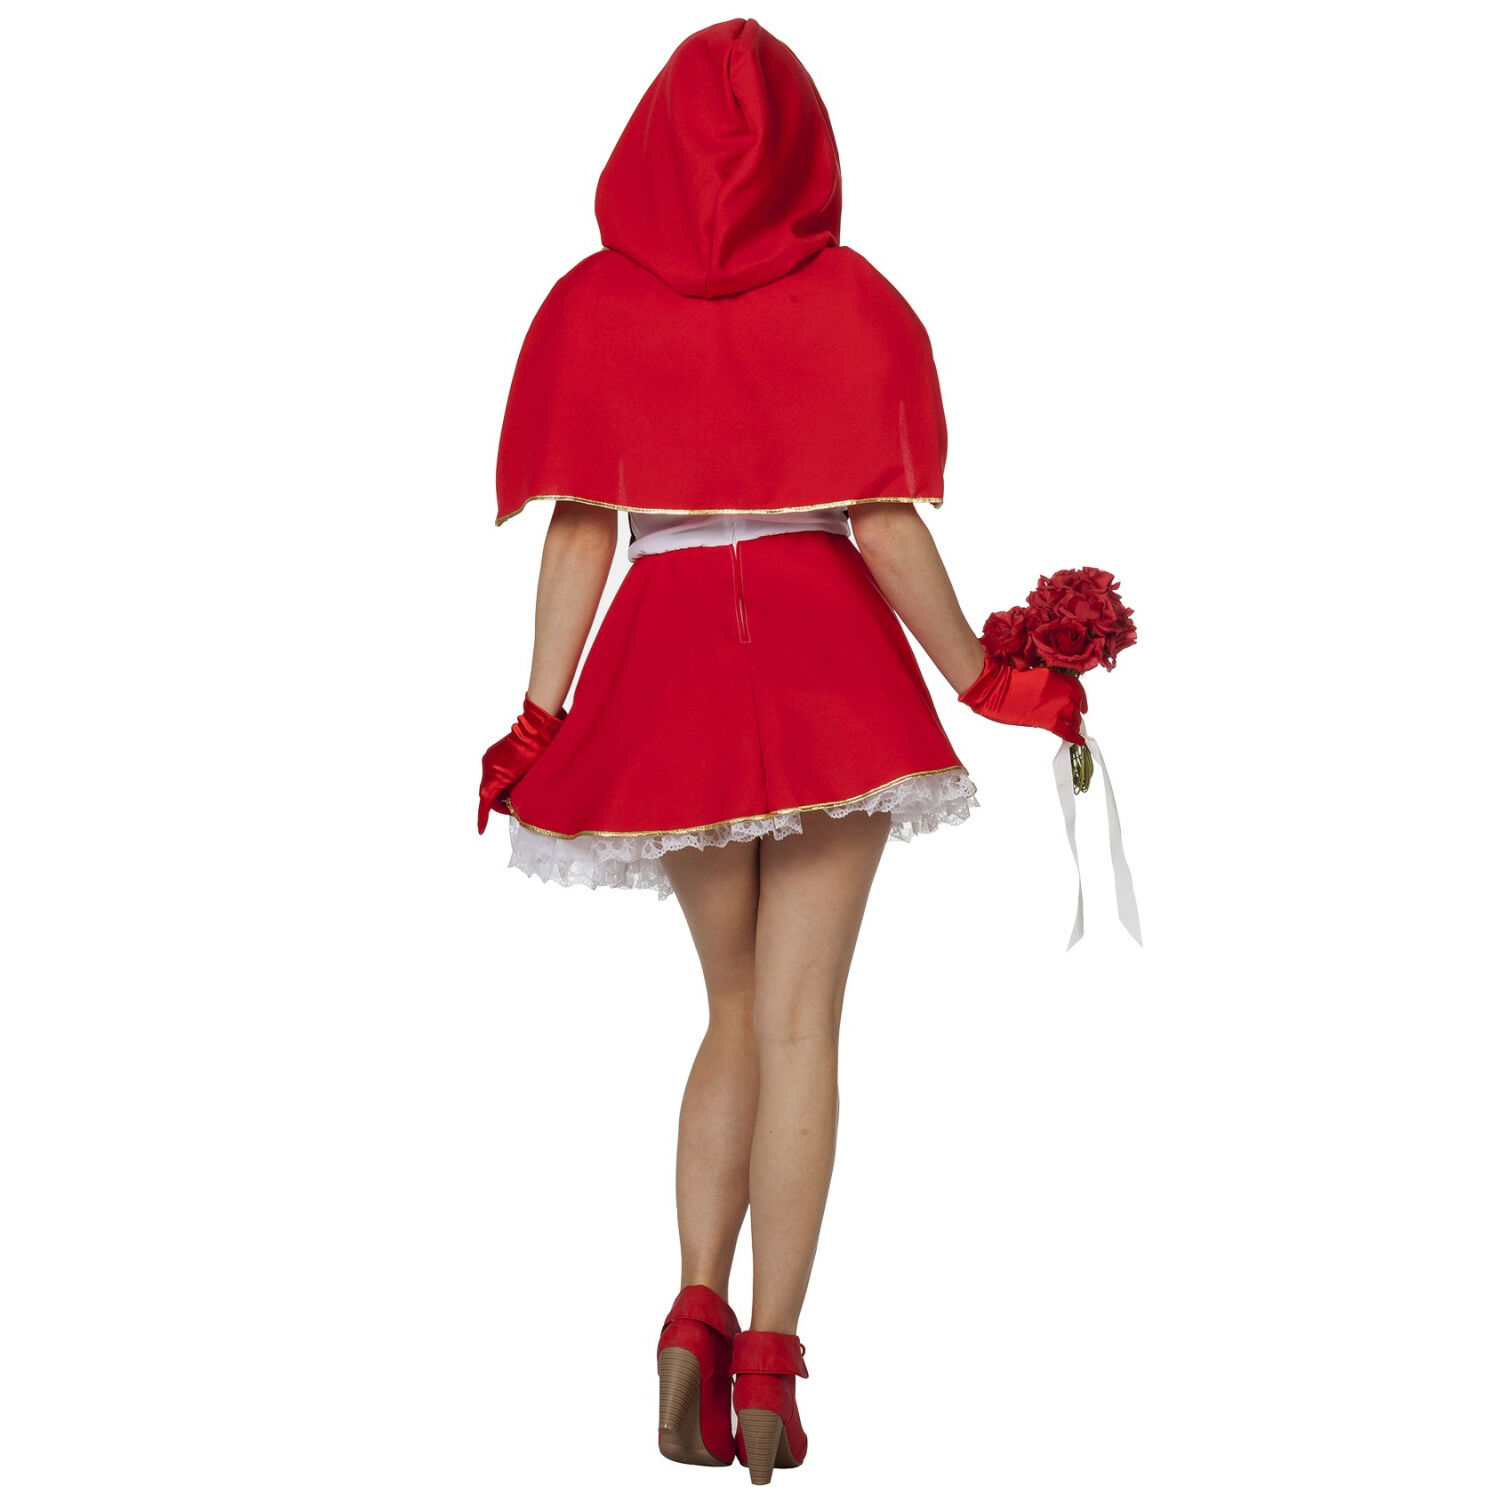 Damen-Kostüm Rotkäppchen, Gr. 34 Bild 3